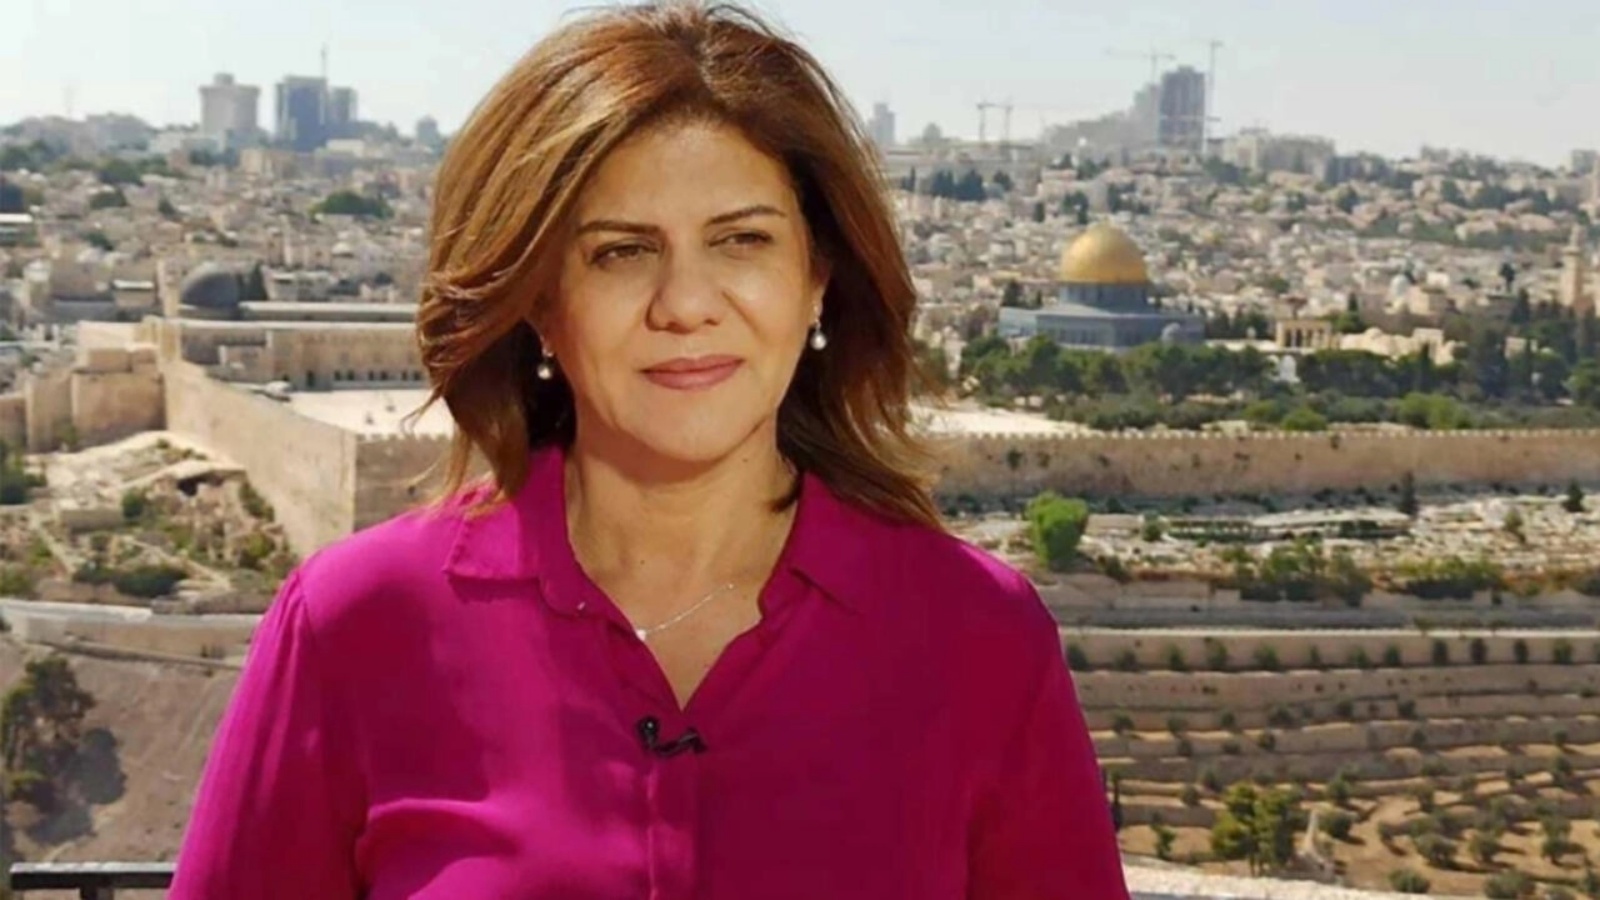 صورة غير مؤرخة للصحافية الفلسطينية في قناة الجزيرة شيرين أبو عاقلة التي قتلت بالرصاص في جنين بالضفة الغربية المحتلة في 11 مايو 2022